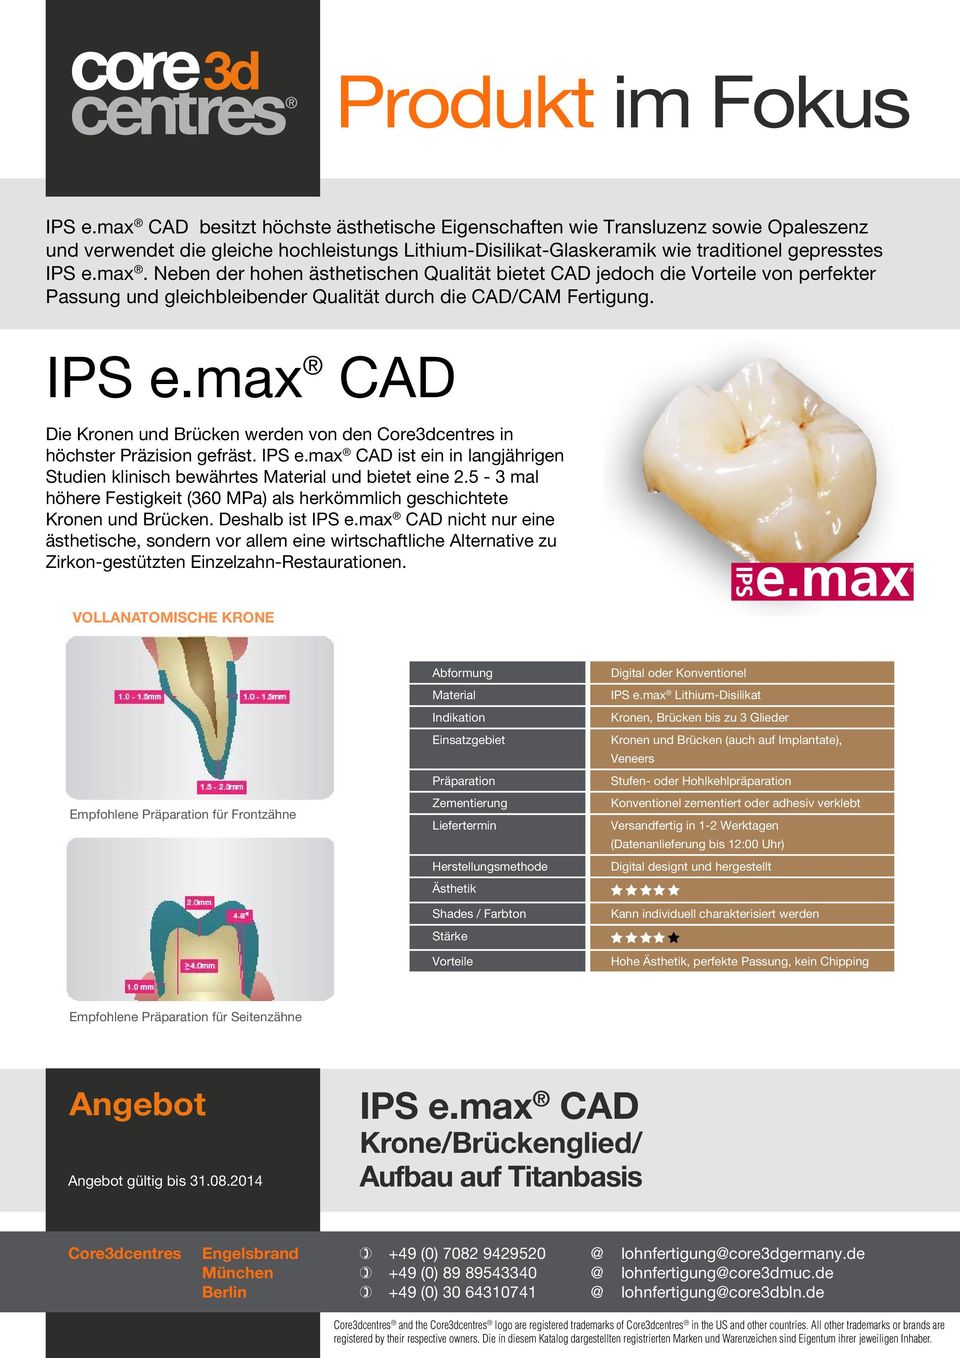 IPS e.max CAD Die Kronen und Brücken werden von den Core3dcentres in höchster Präzision gefräst. IPS e.max CAD ist ein in langjährigen Studien klinisch bewährtes Material und bietet eine 2.